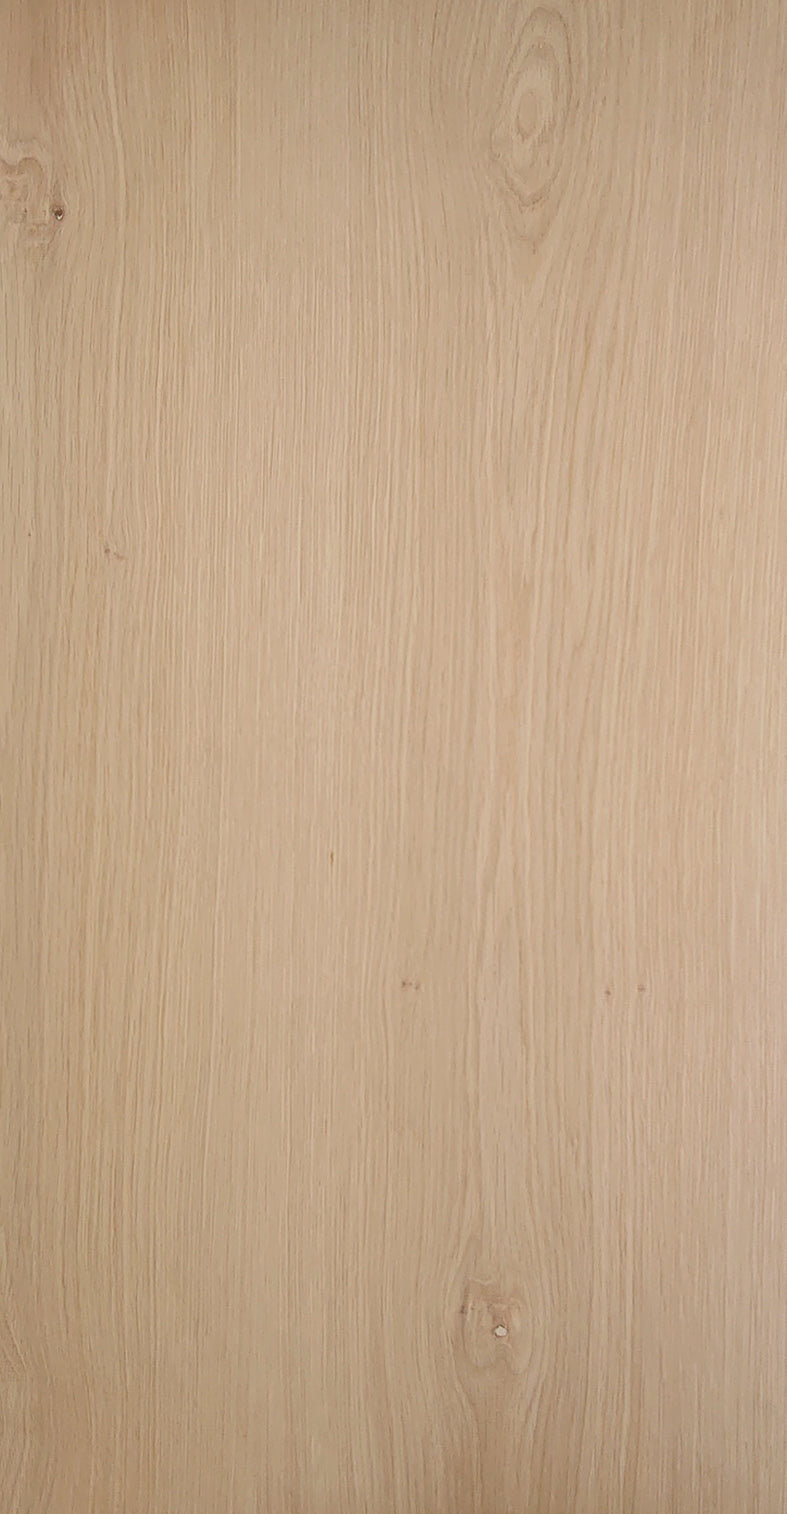 ナラ節付 板目 無塗装 [天然木突板合板貼り] – 古径コスモ